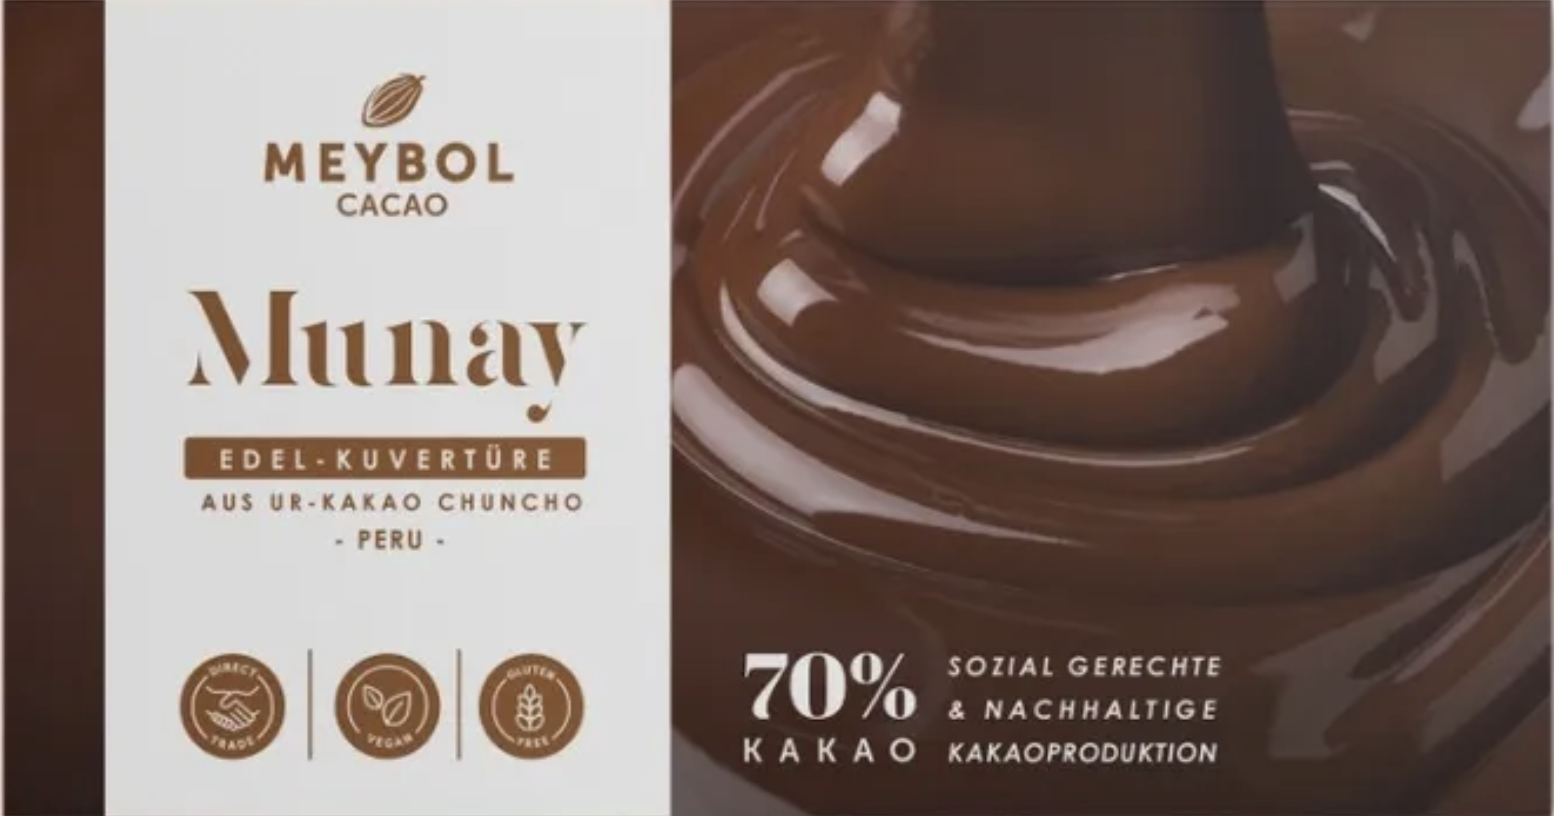 MEYBOL Cacao | Edel-Kuvertüre aus Chuncho-Urkakao »Munay« 70% | 100g